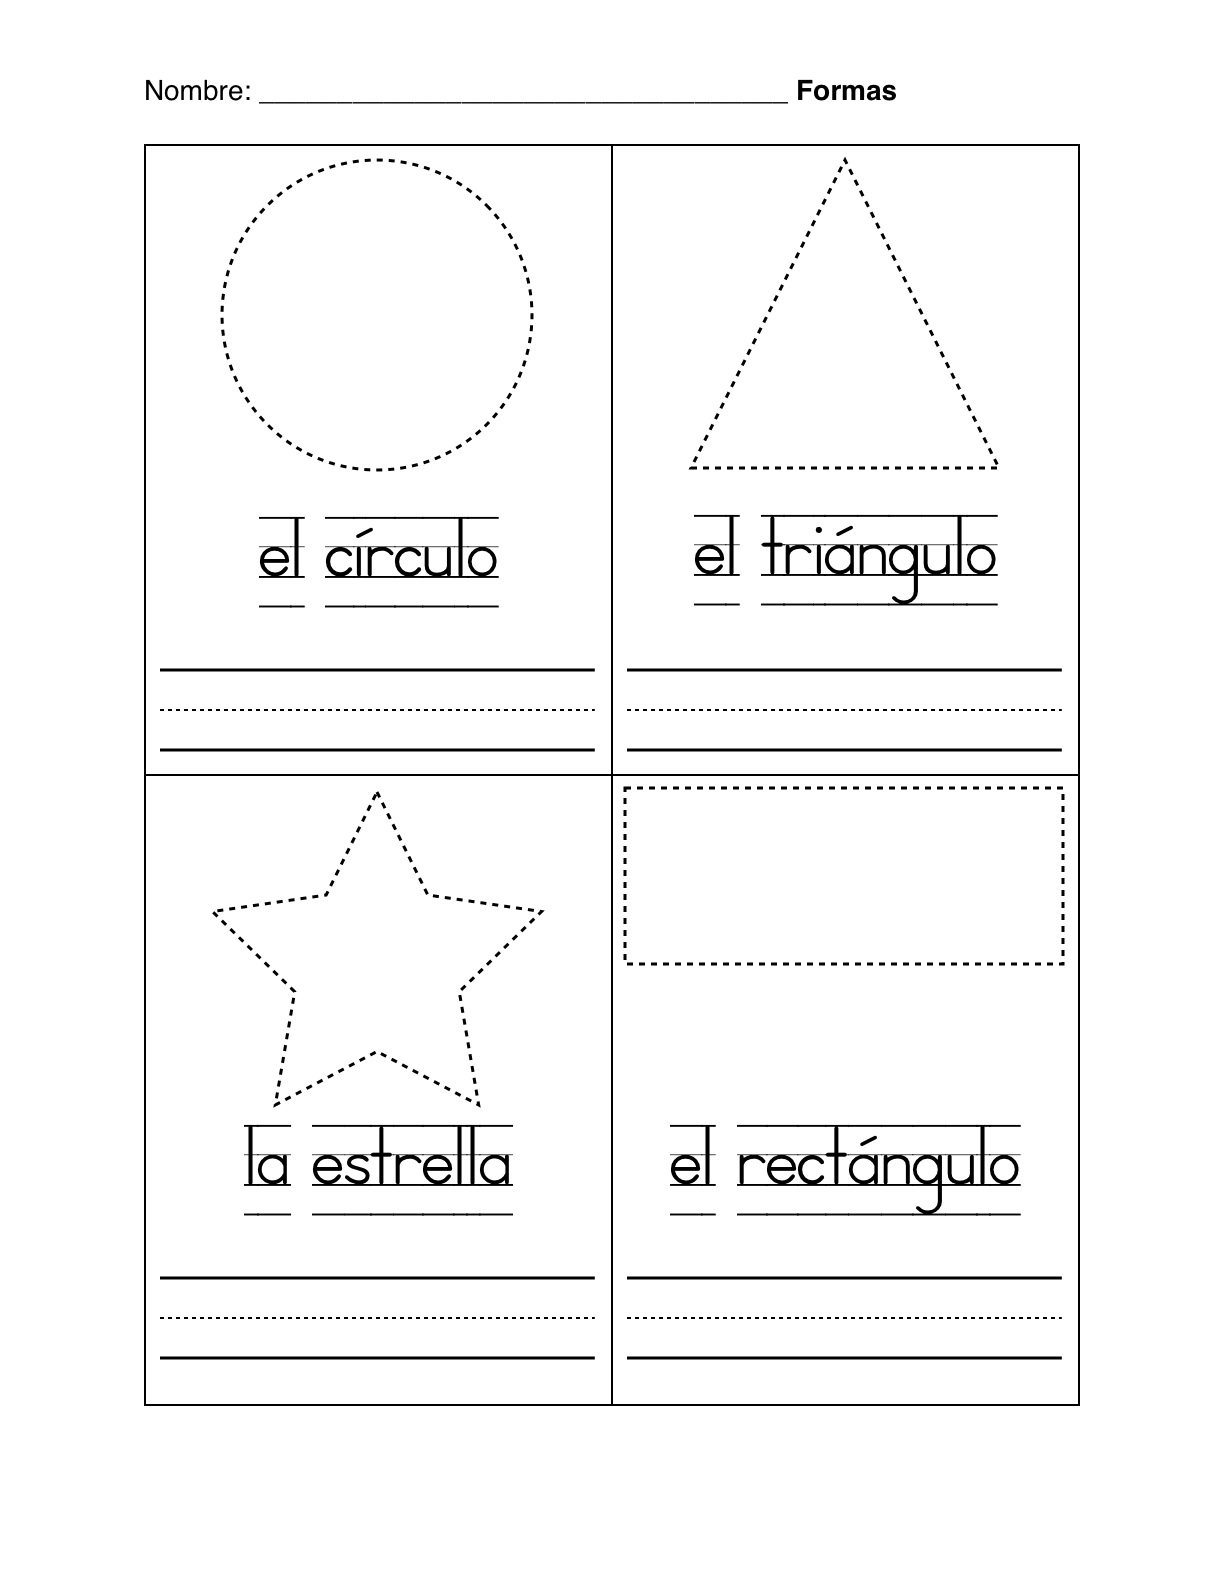 Basic Spanish Shapes Worksheets Image